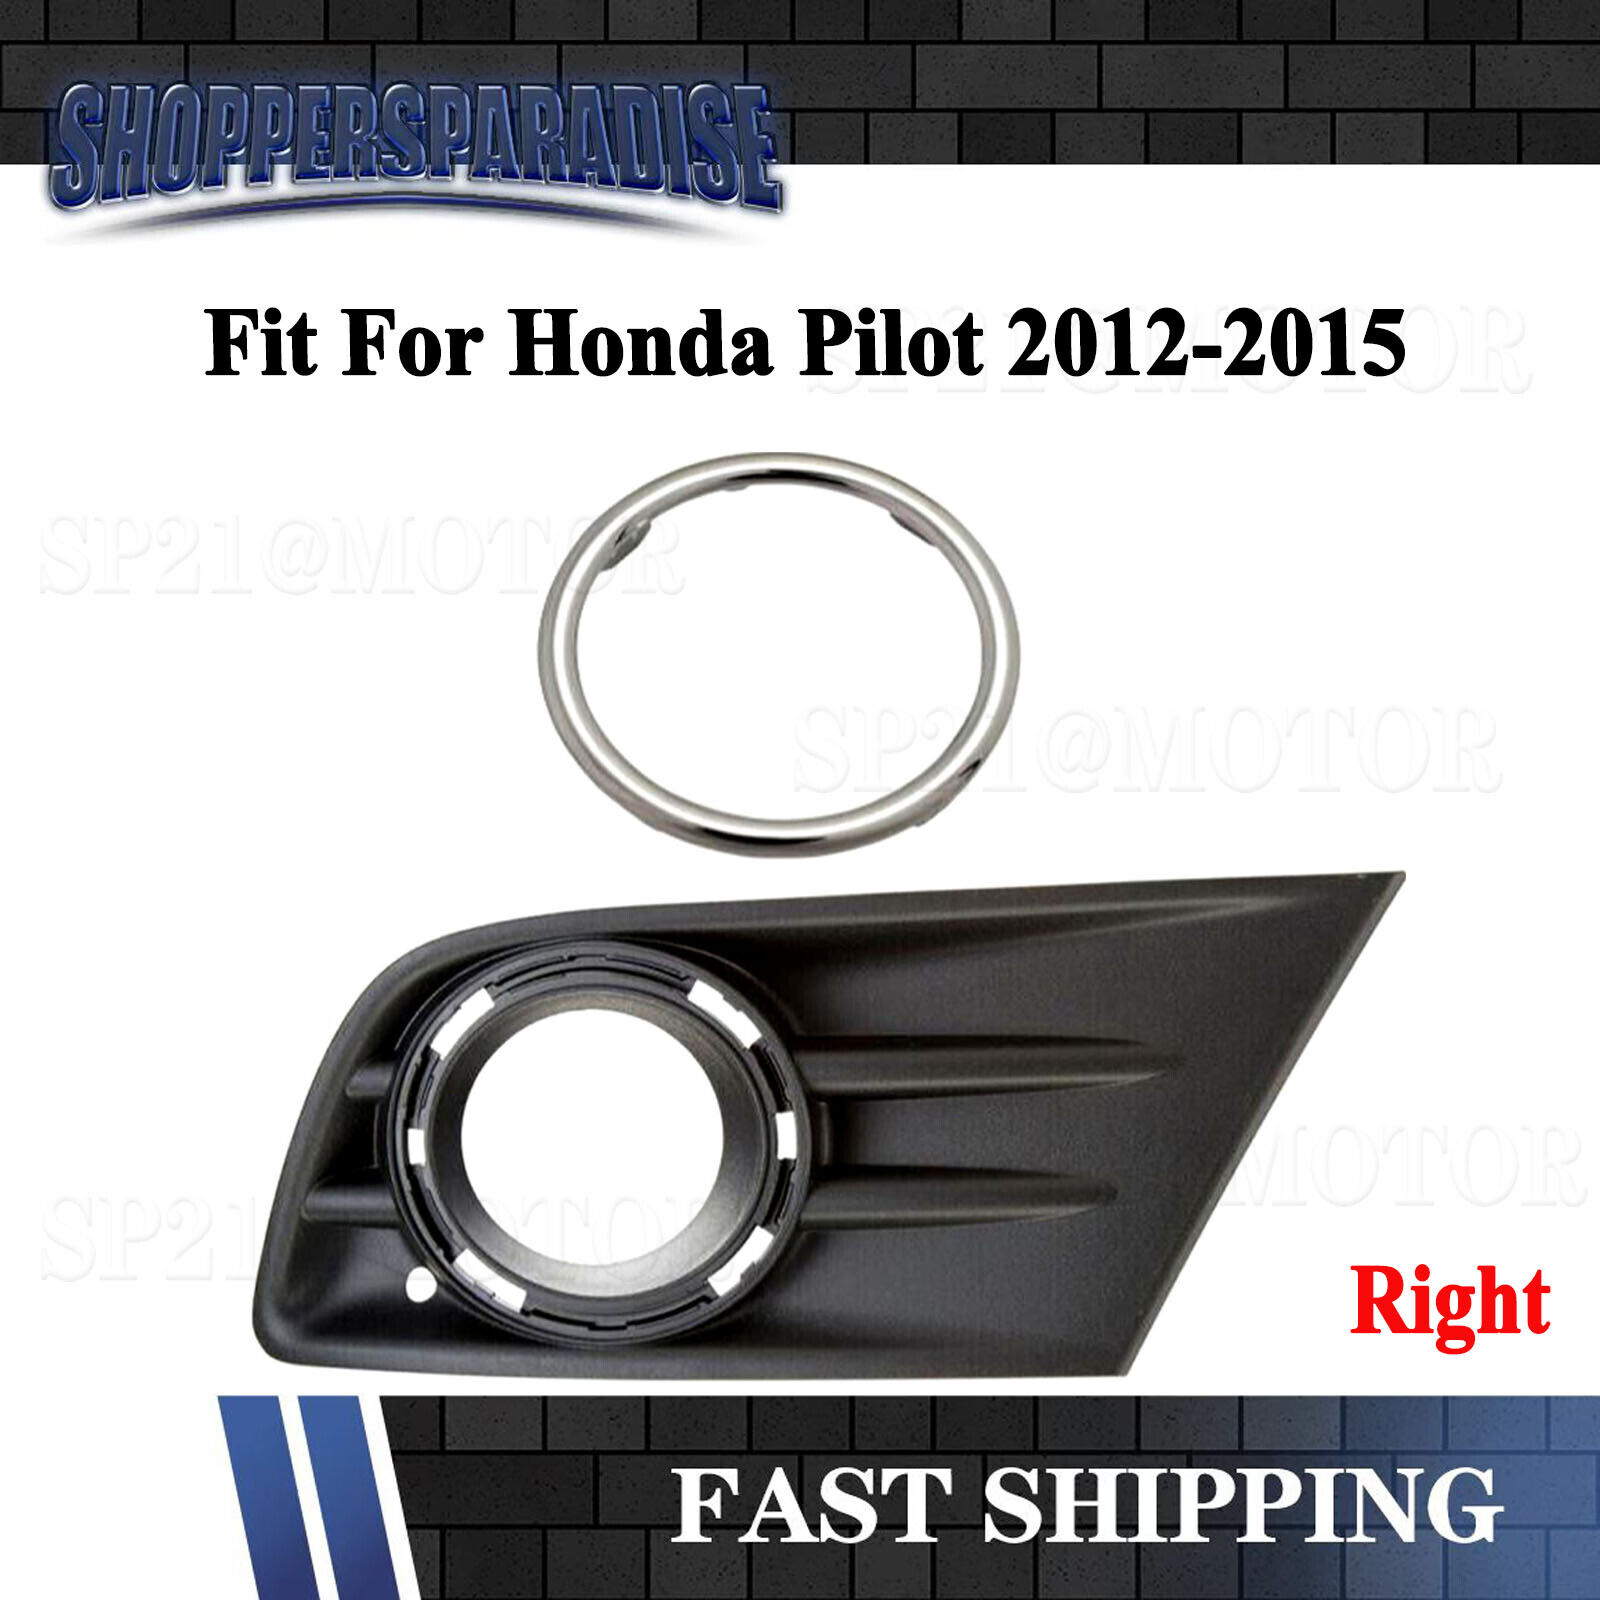 For Honda Pilot 2012-2015 Front Bumper Fog Light Cover w/Chrome Ring Right Side